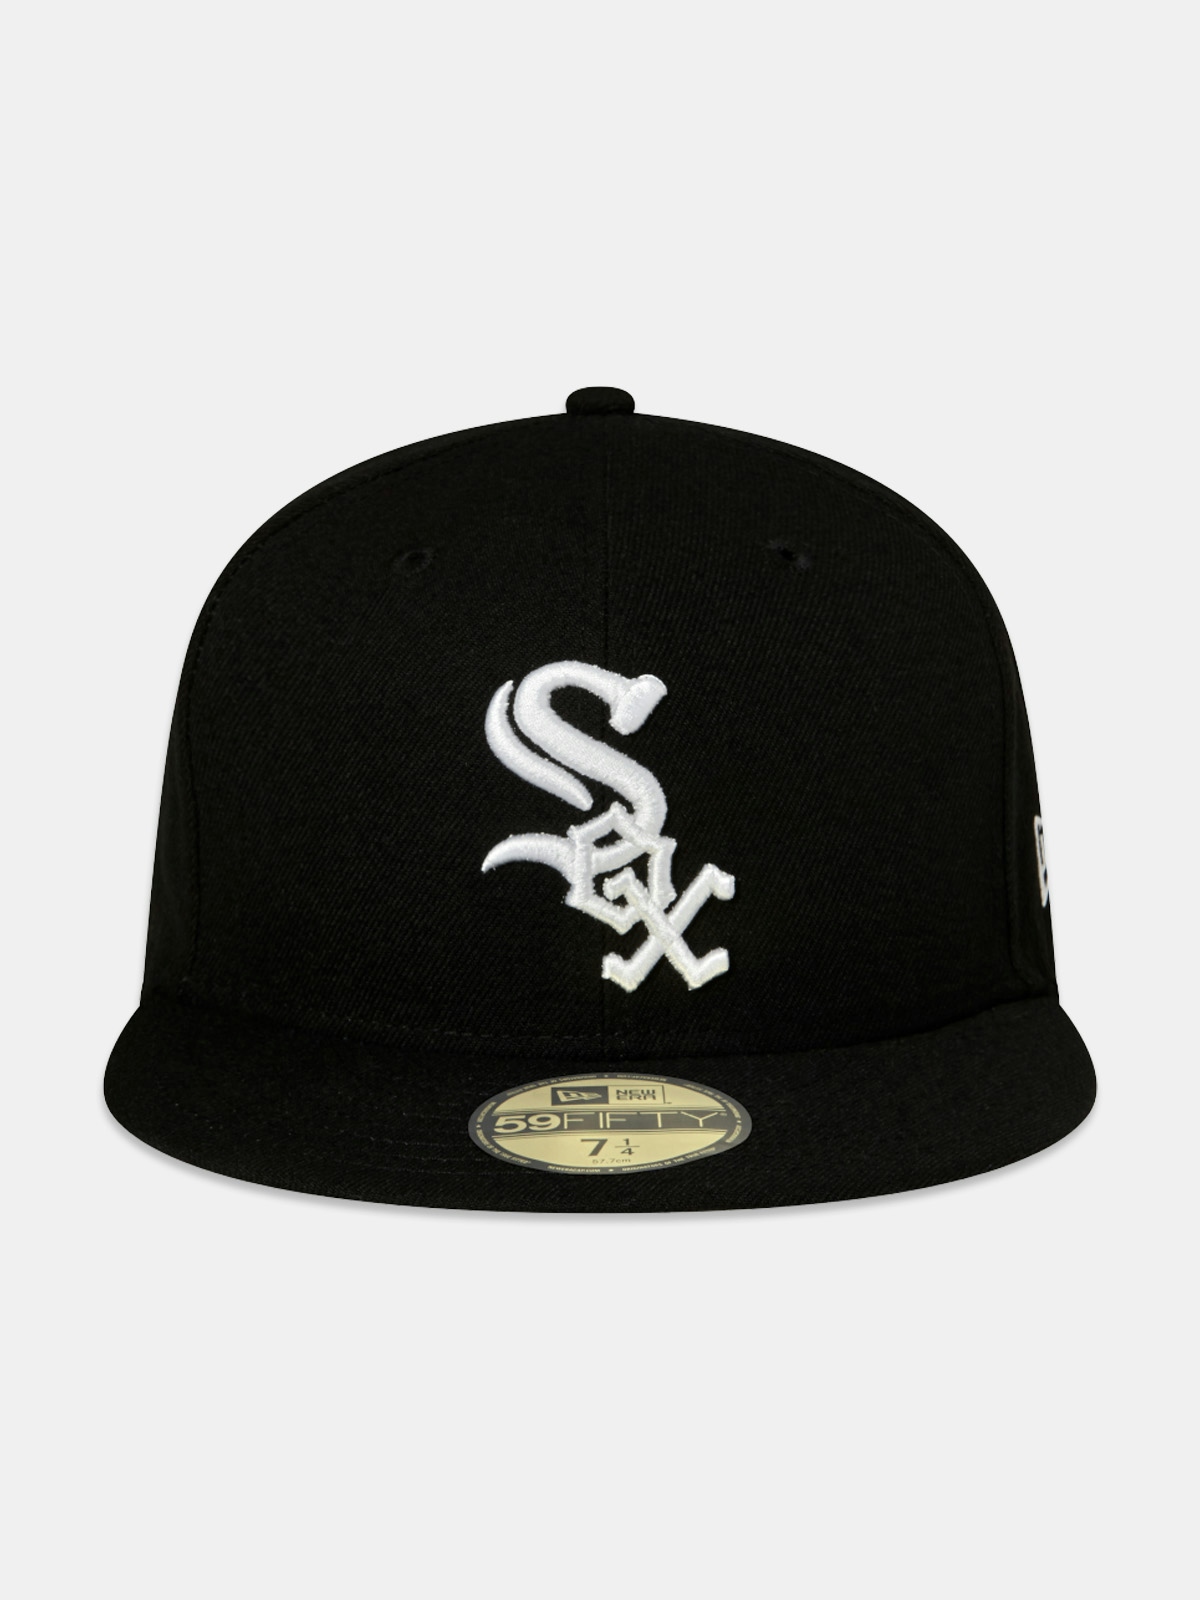 New Era Mlb Ac Perf 5950 Chicago White Sox Caps Black 4